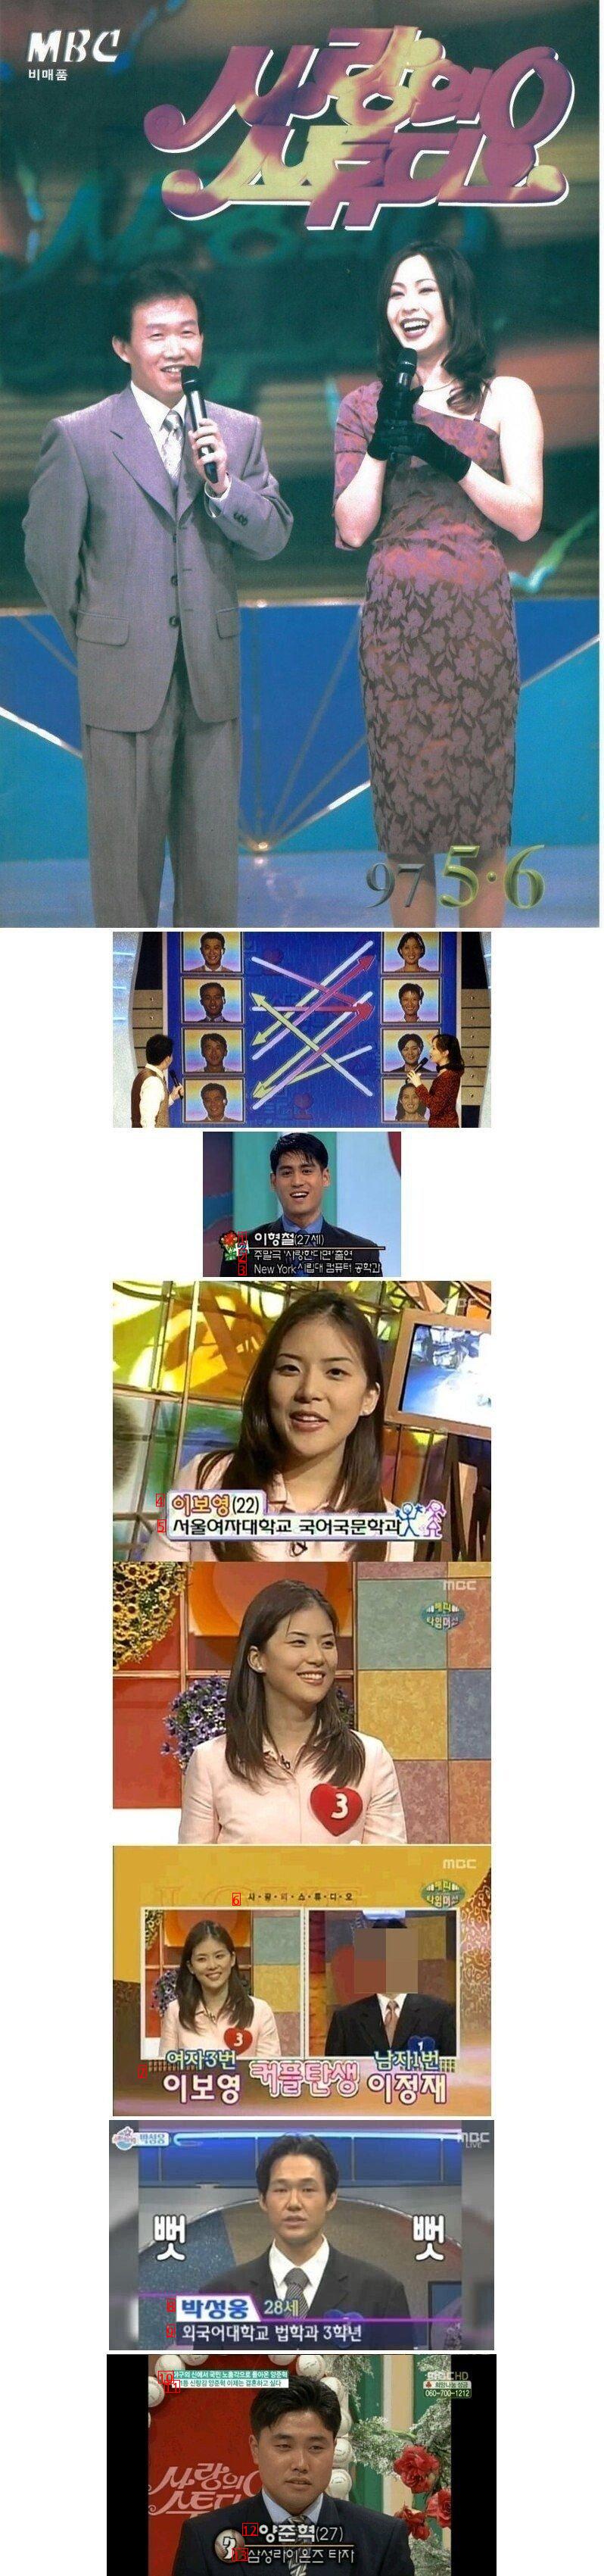 한국 방송 최초 남녀 맞선 프로그램